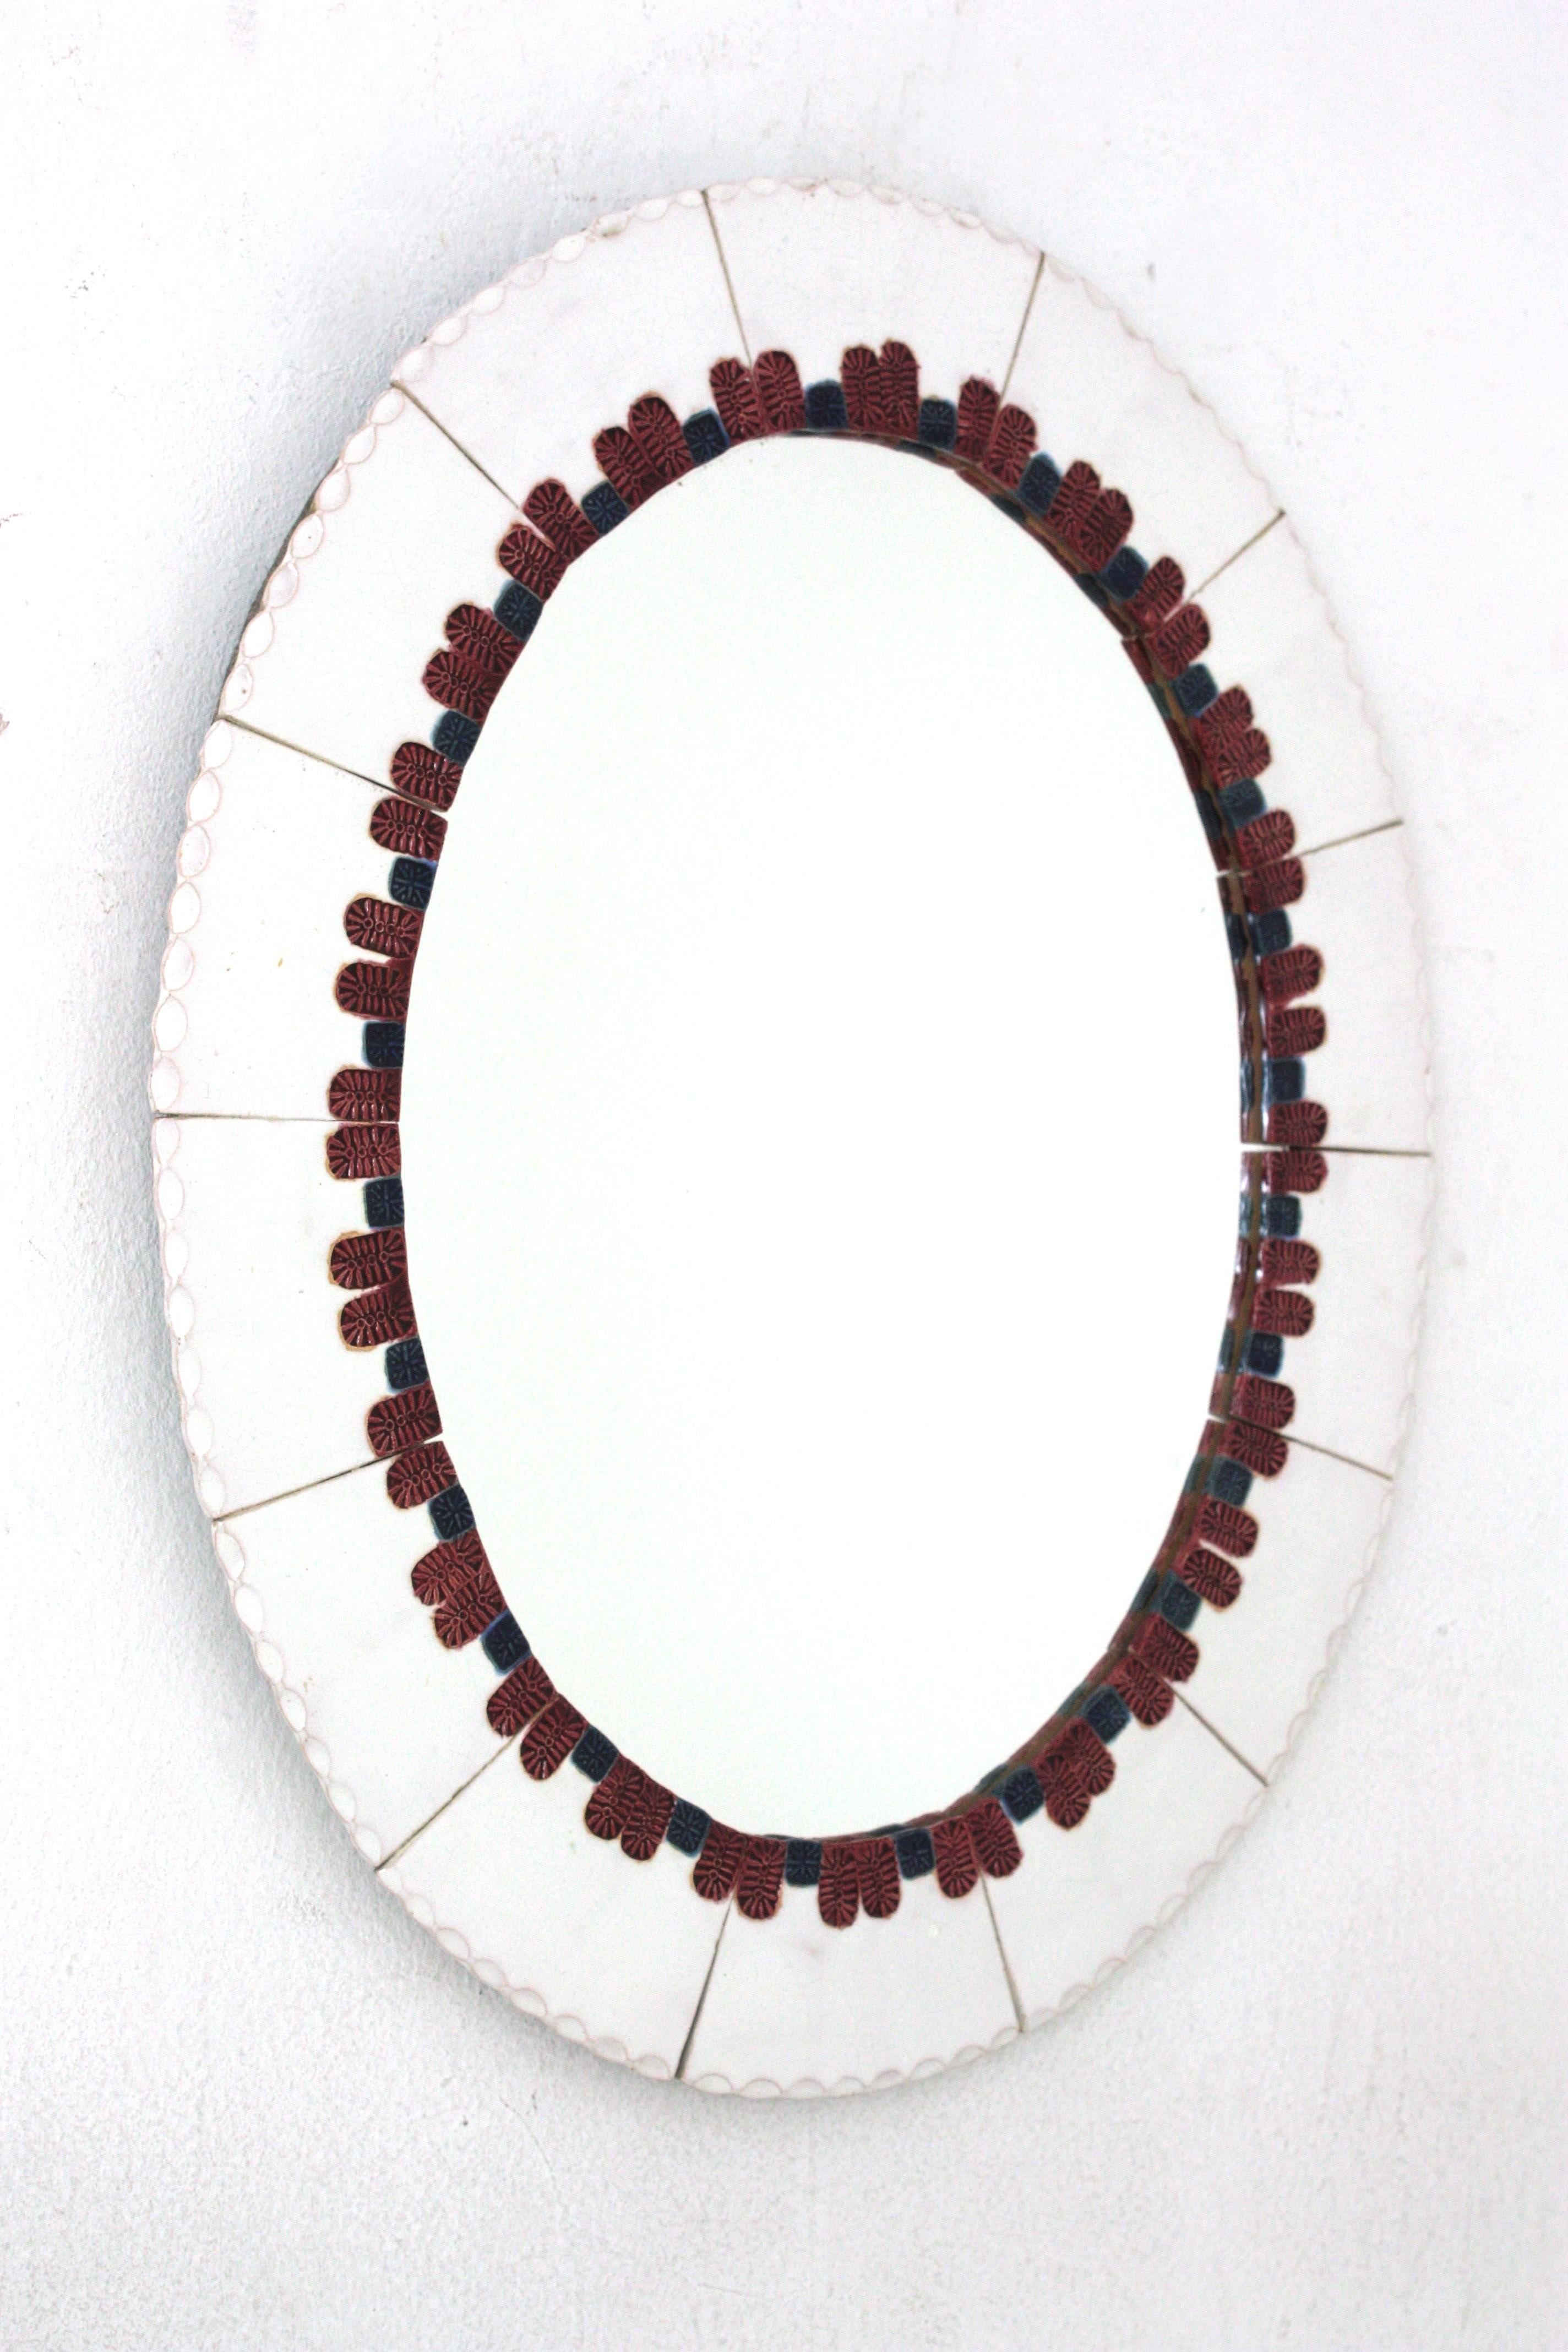 white ceramic mirror